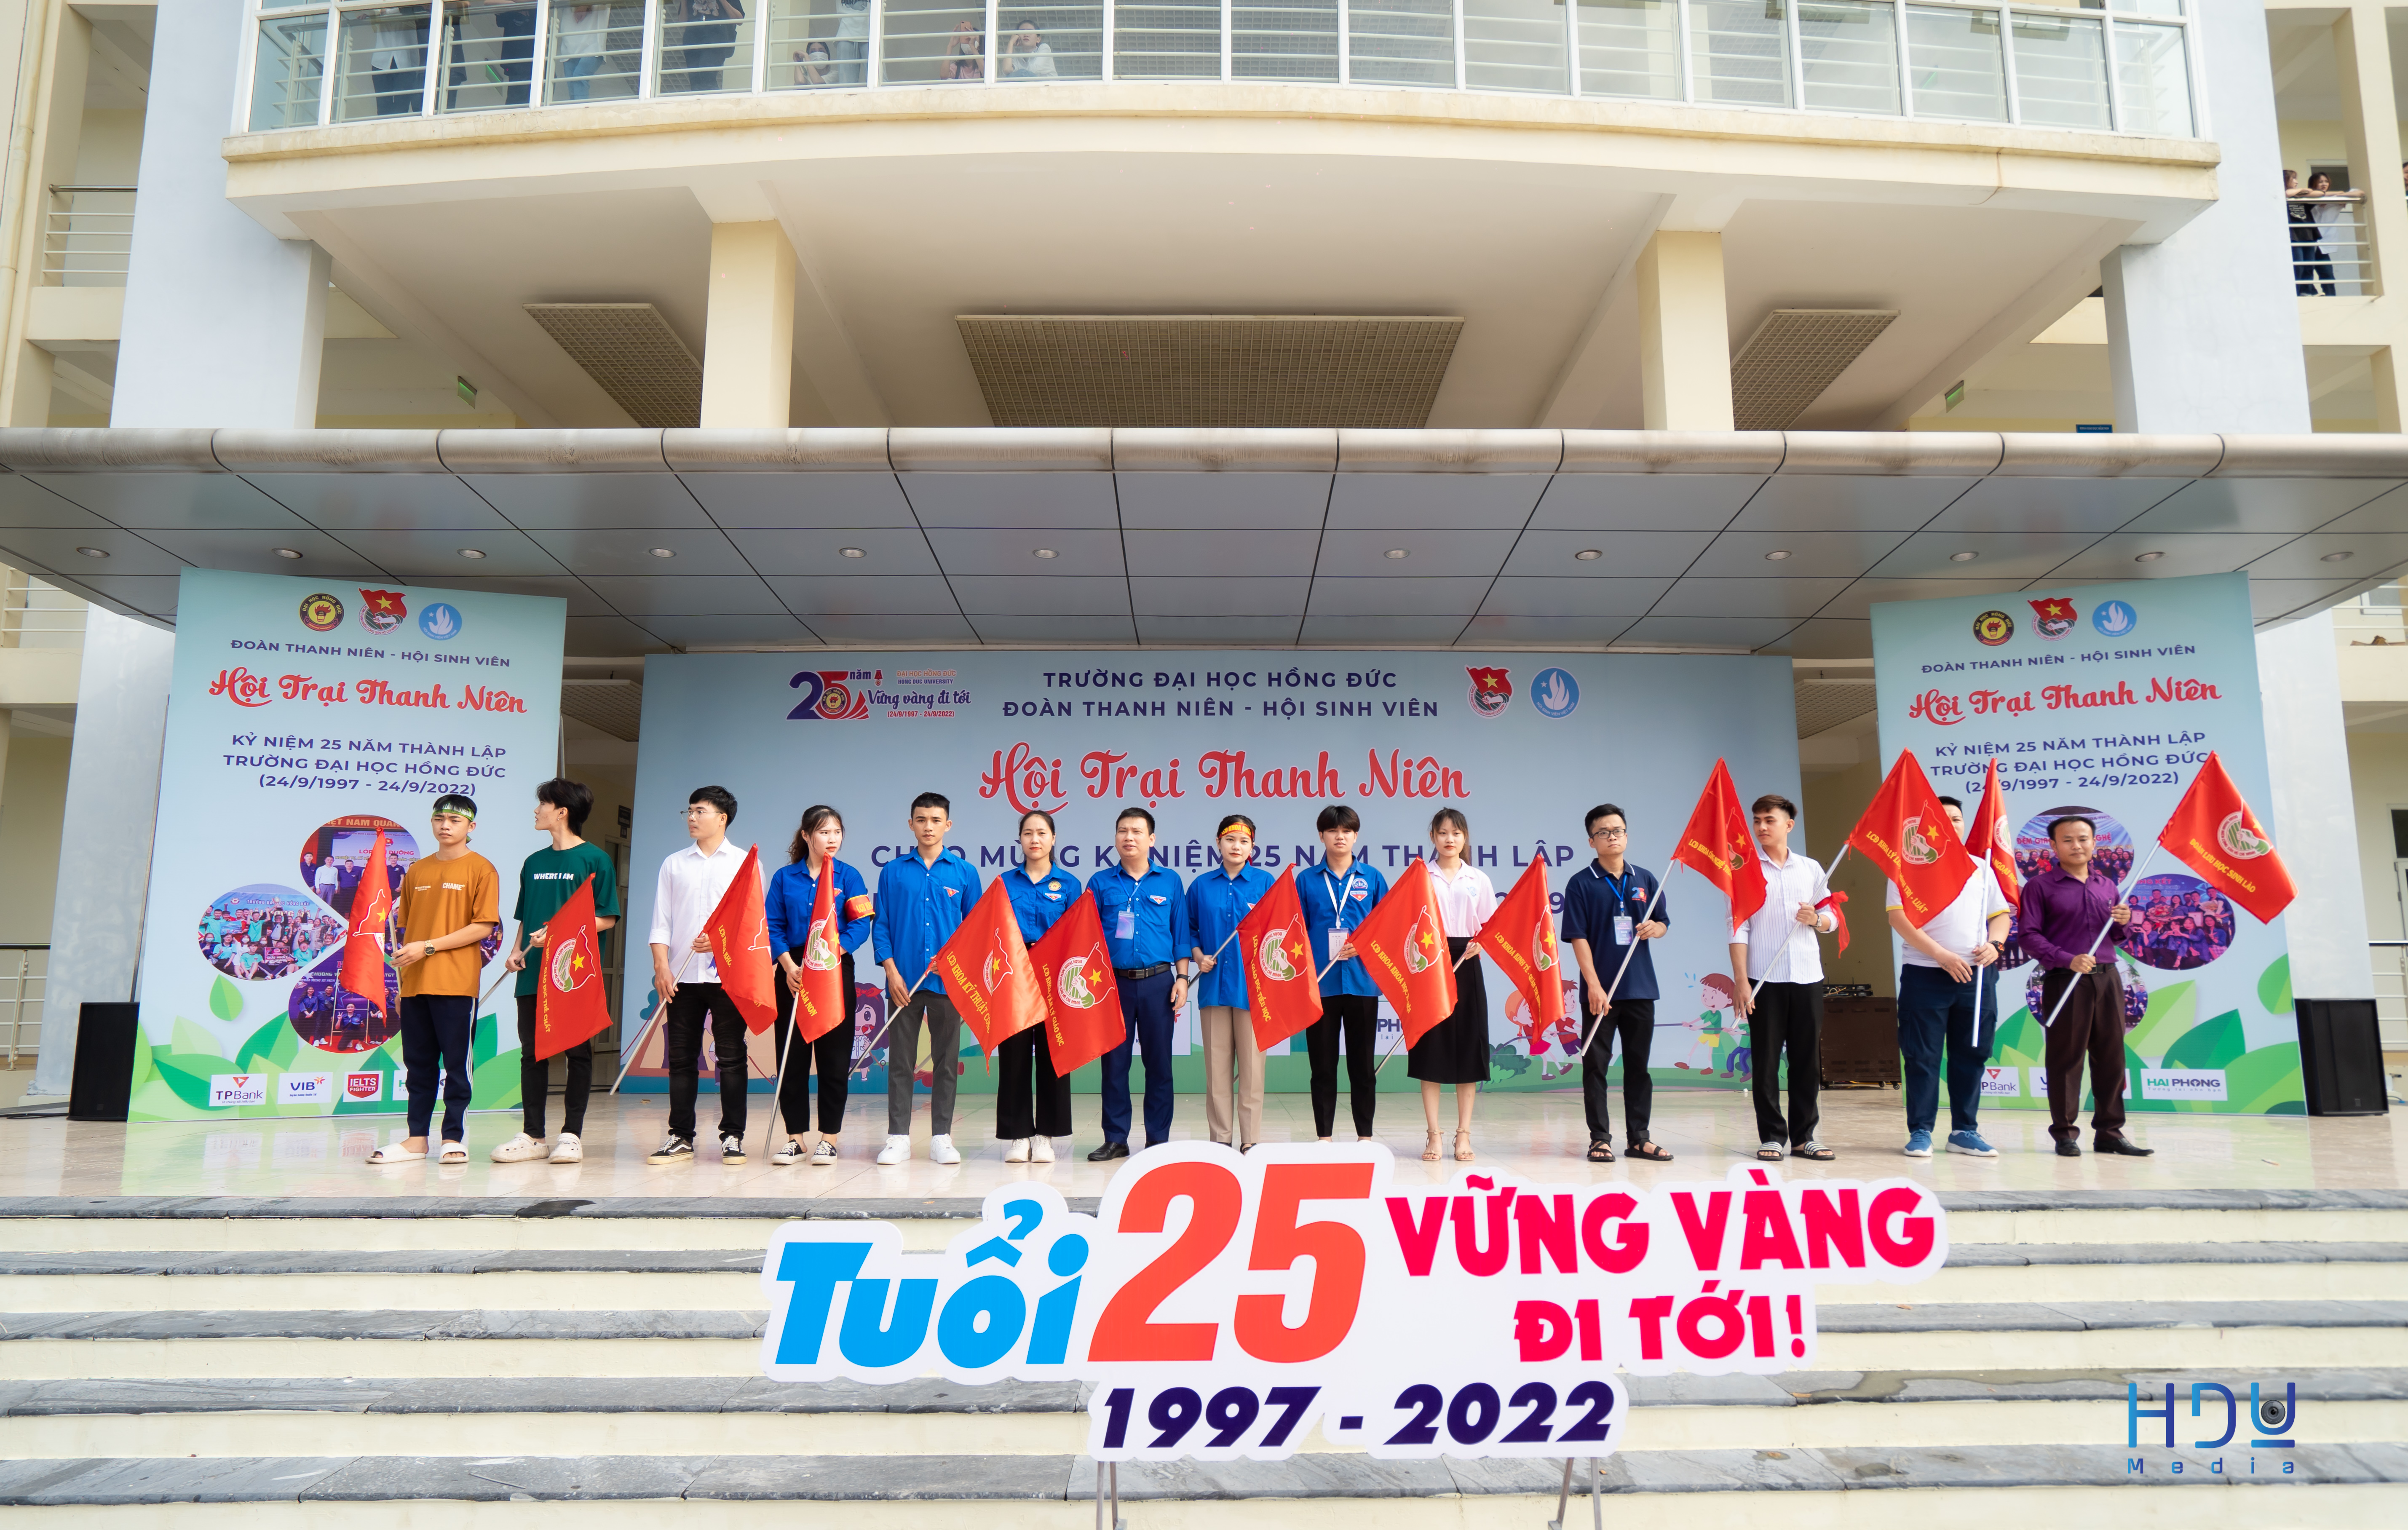 Khai mạc "Hội trại thanh niên" chào mừng kỷ niệm 25 năm Ngày thành lập Trường Đại học Hồng Đức (24/9/1997 - 24/9/2022)